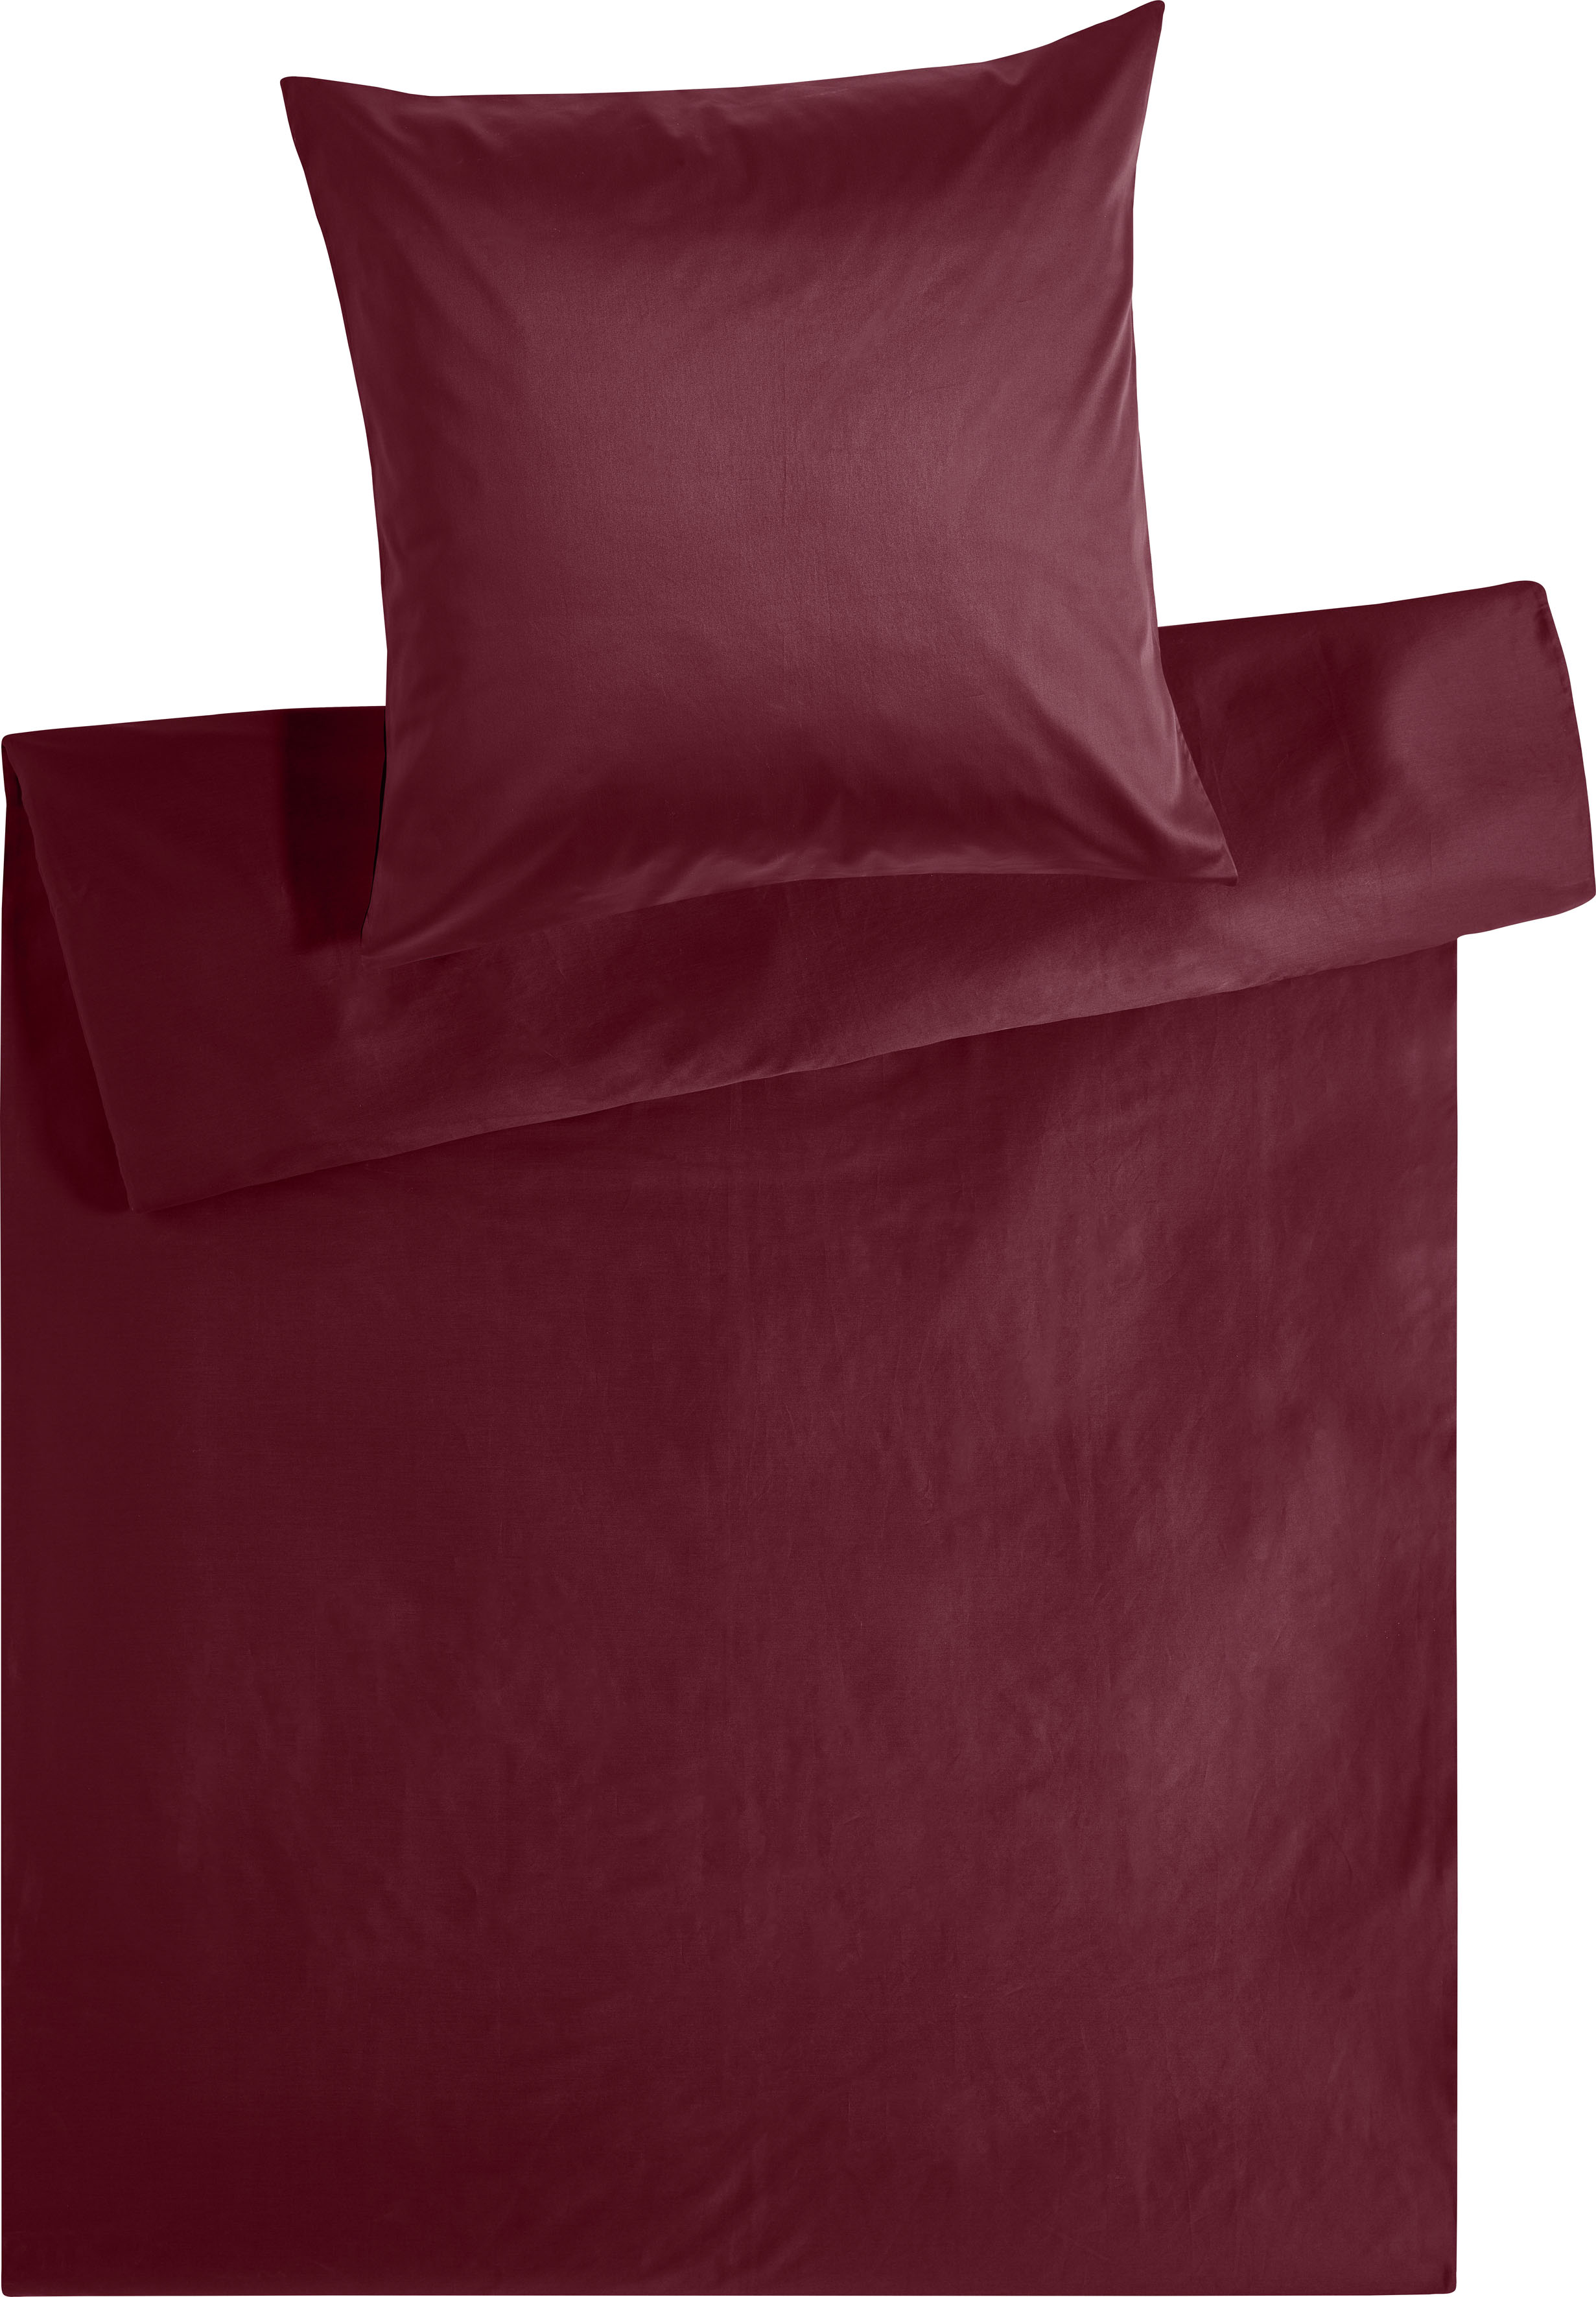 Kneer Bettwäsche »Edel-Satin Uni in 135x200, 155x220 oder 200x200 cm«, (2 tlg.), Bettwäsche aus Baumwolle in Satin-Qualität, unifarbene Bettwäsche